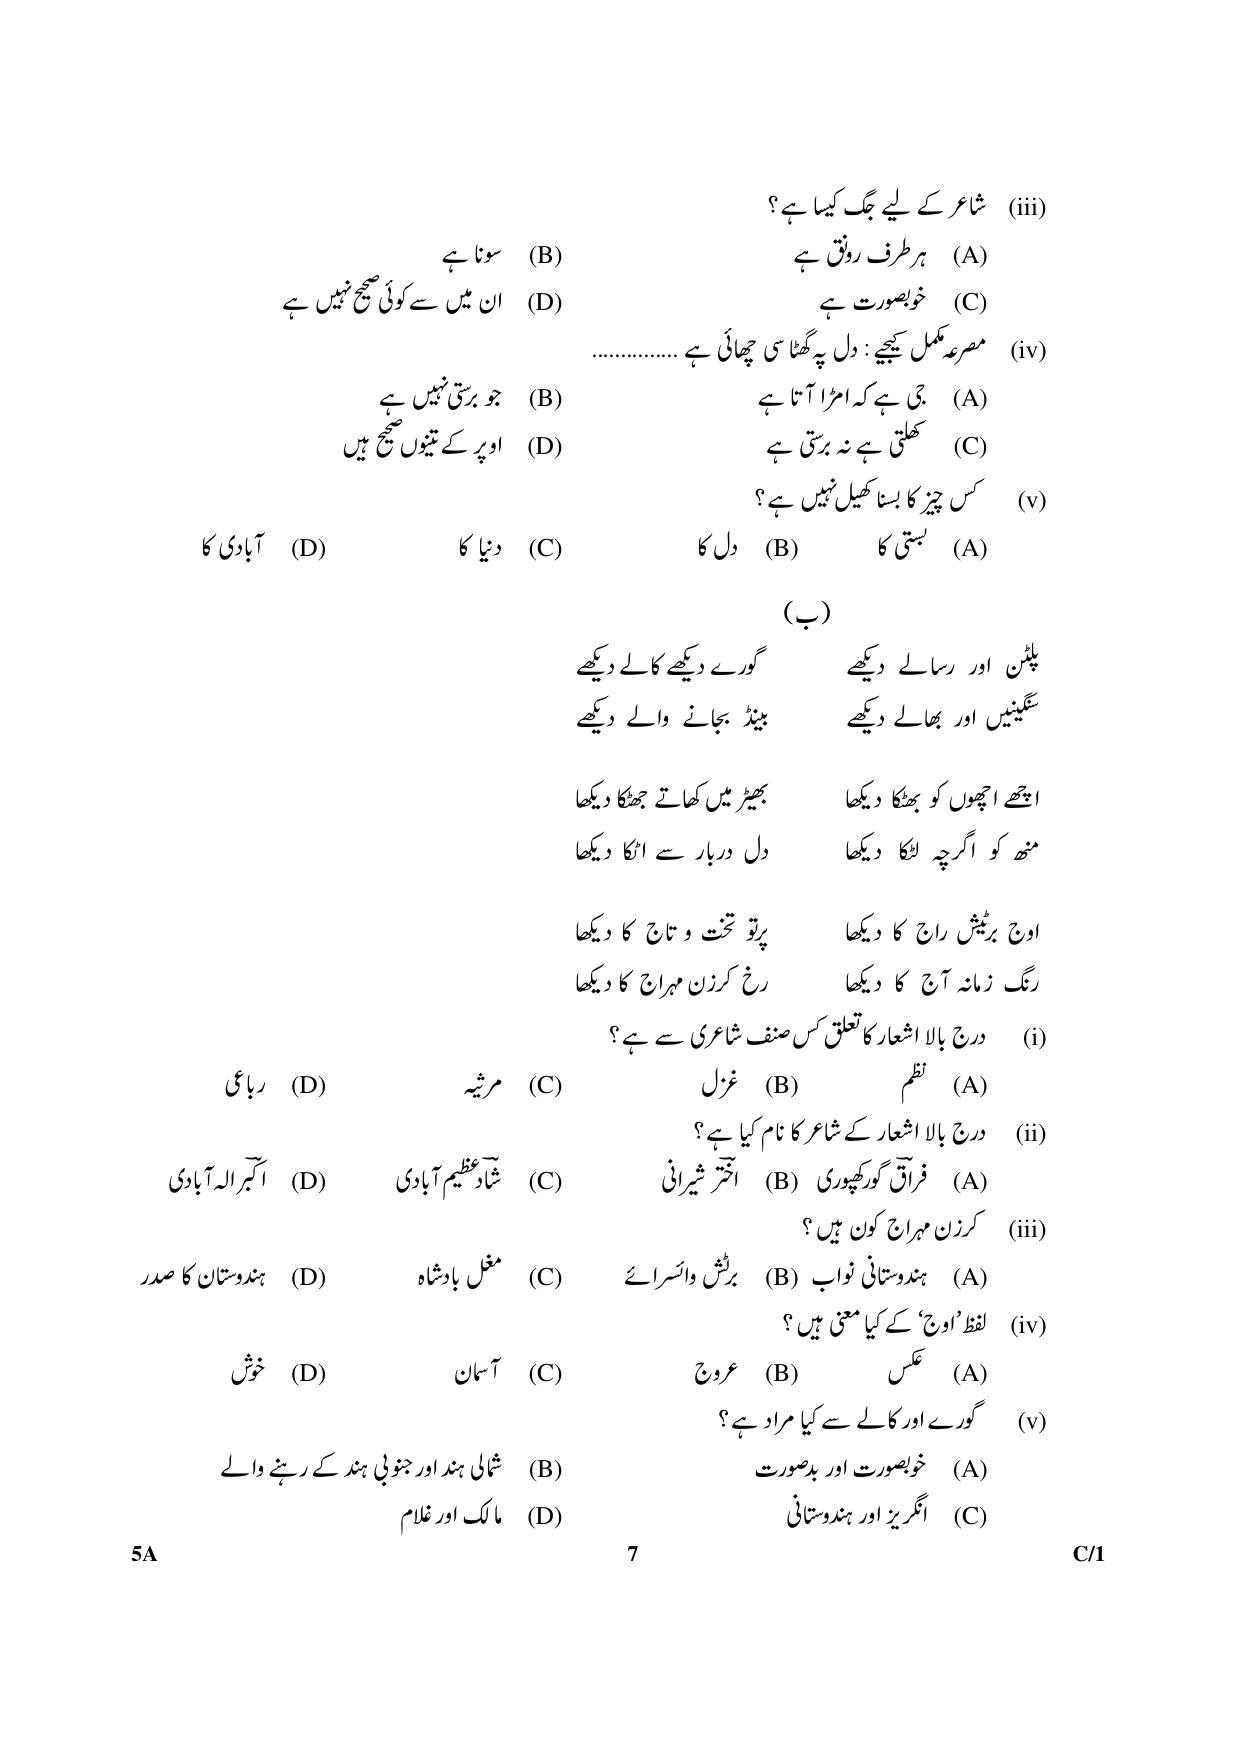 CBSE Class 10 5A Urdu (Course A) 2018 Compartment Question Paper - Page 7